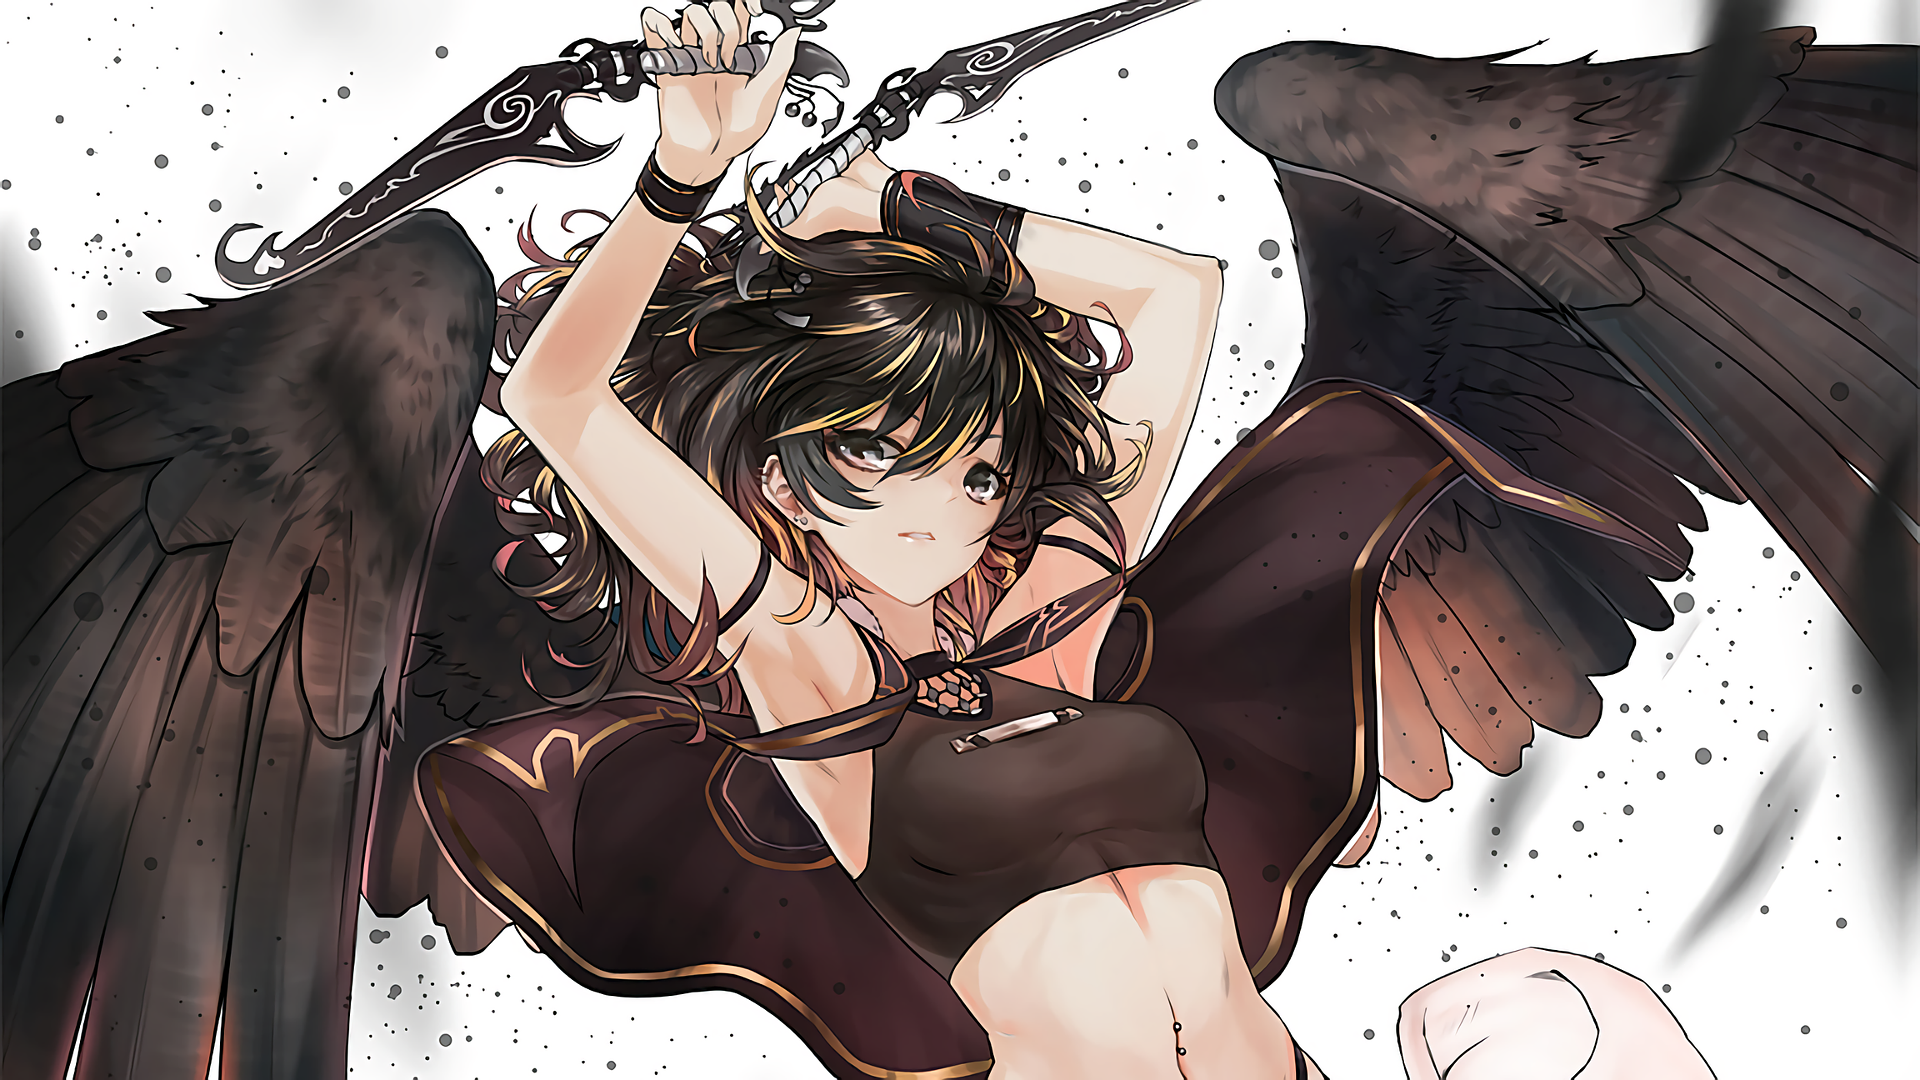 Anime 1920x1080 anime anime girls wings original characters dagger fantasy art fantasy girl belly dark hair